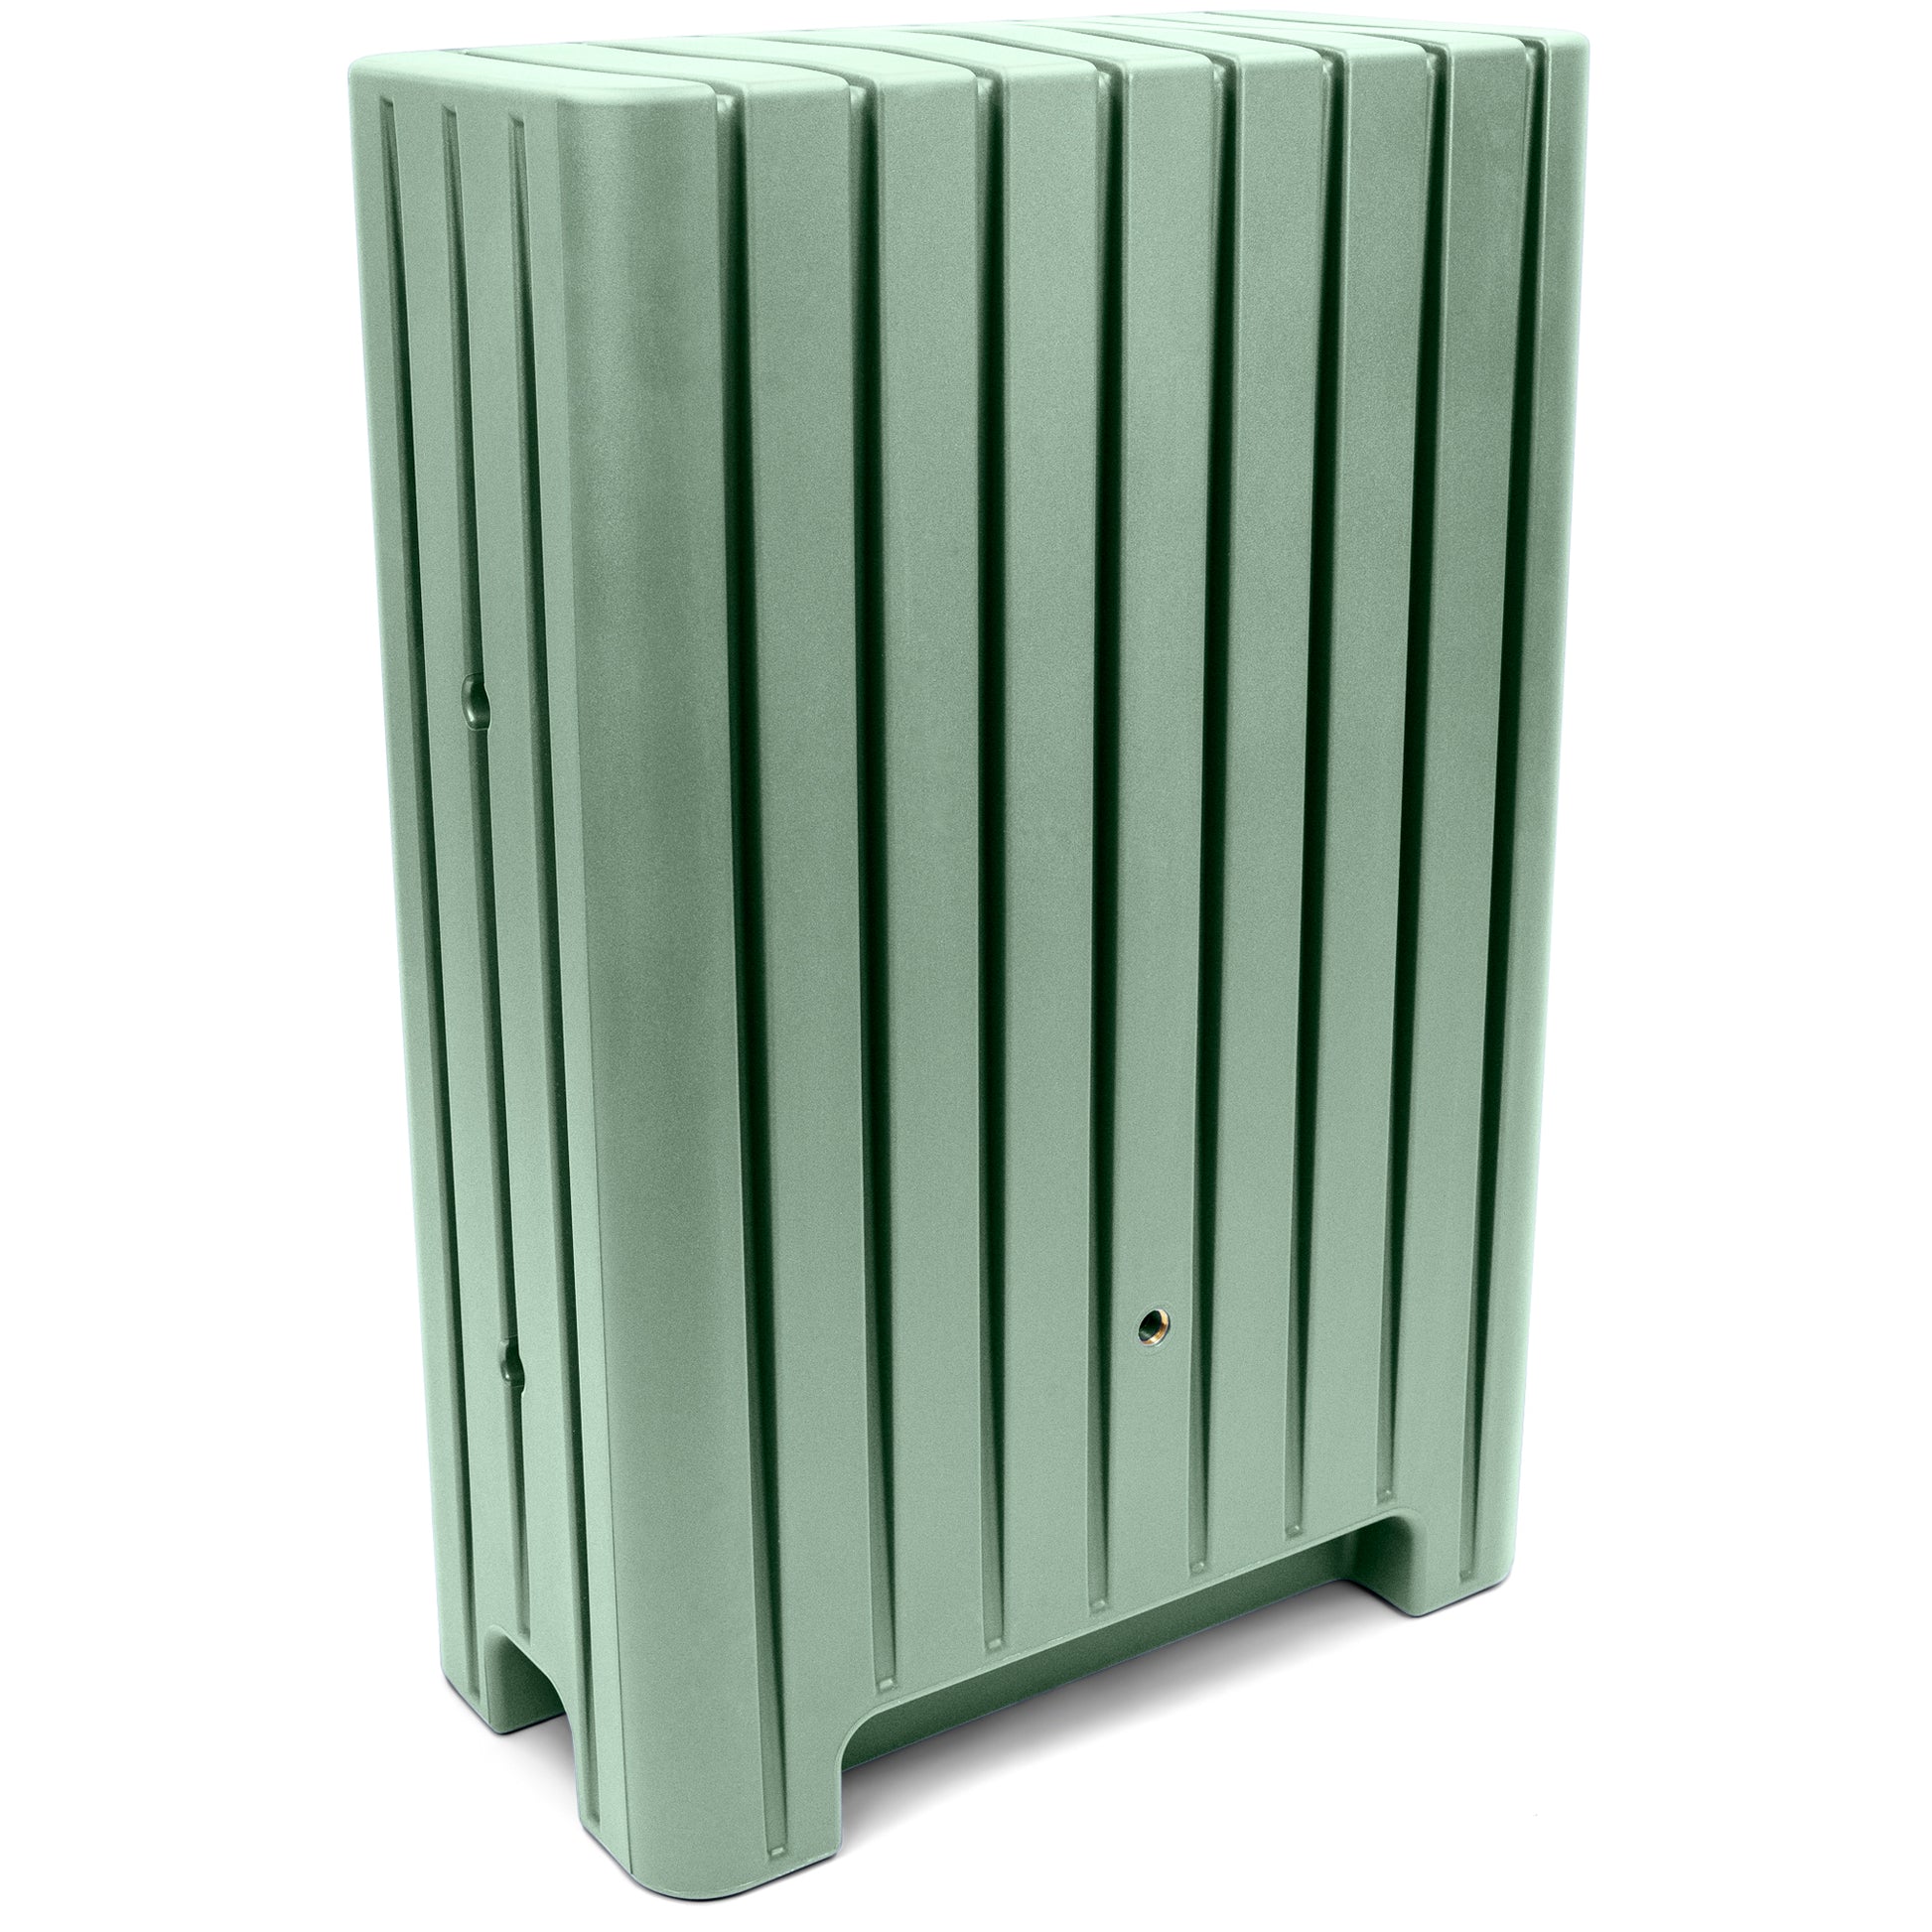 Grüner Metall-Elektrokasten mit einer YourCasa Regentonne 280 Liter [UrbanElegance] - Frostsicher & UV-beständig.